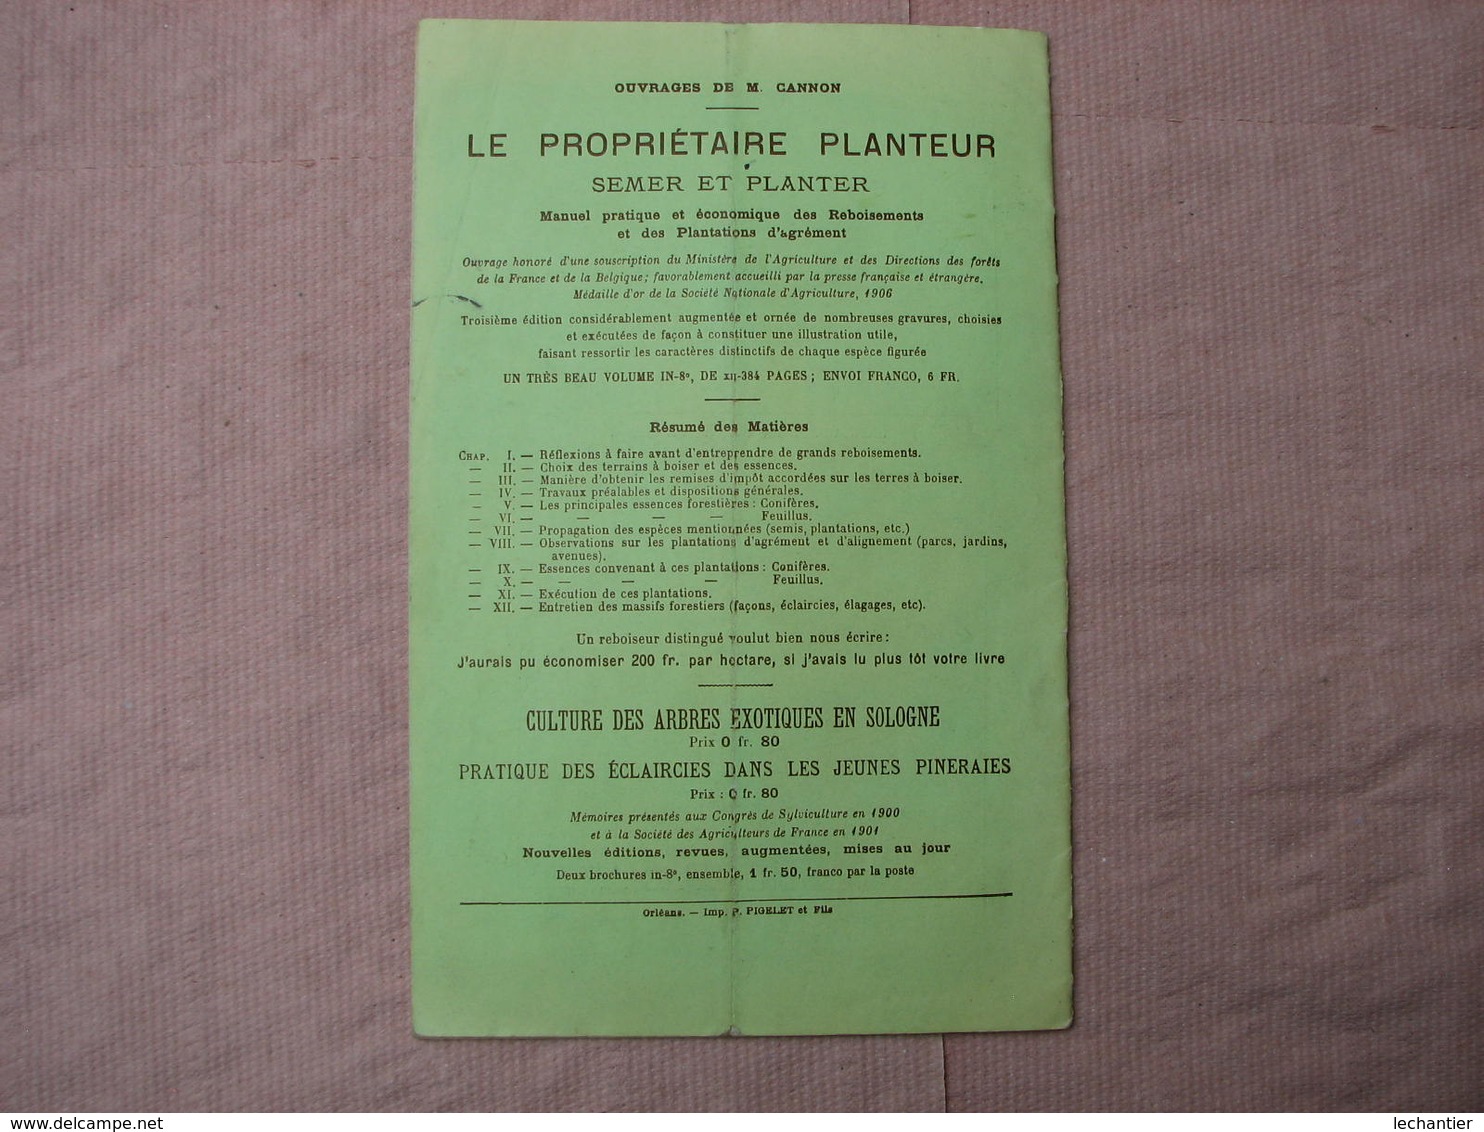 Catalogue 1911-1912 PEPINIERES  FORESTIERES du DOMAINE des VAUX (La Ferté-Imbault loir et Cher T.B.E.